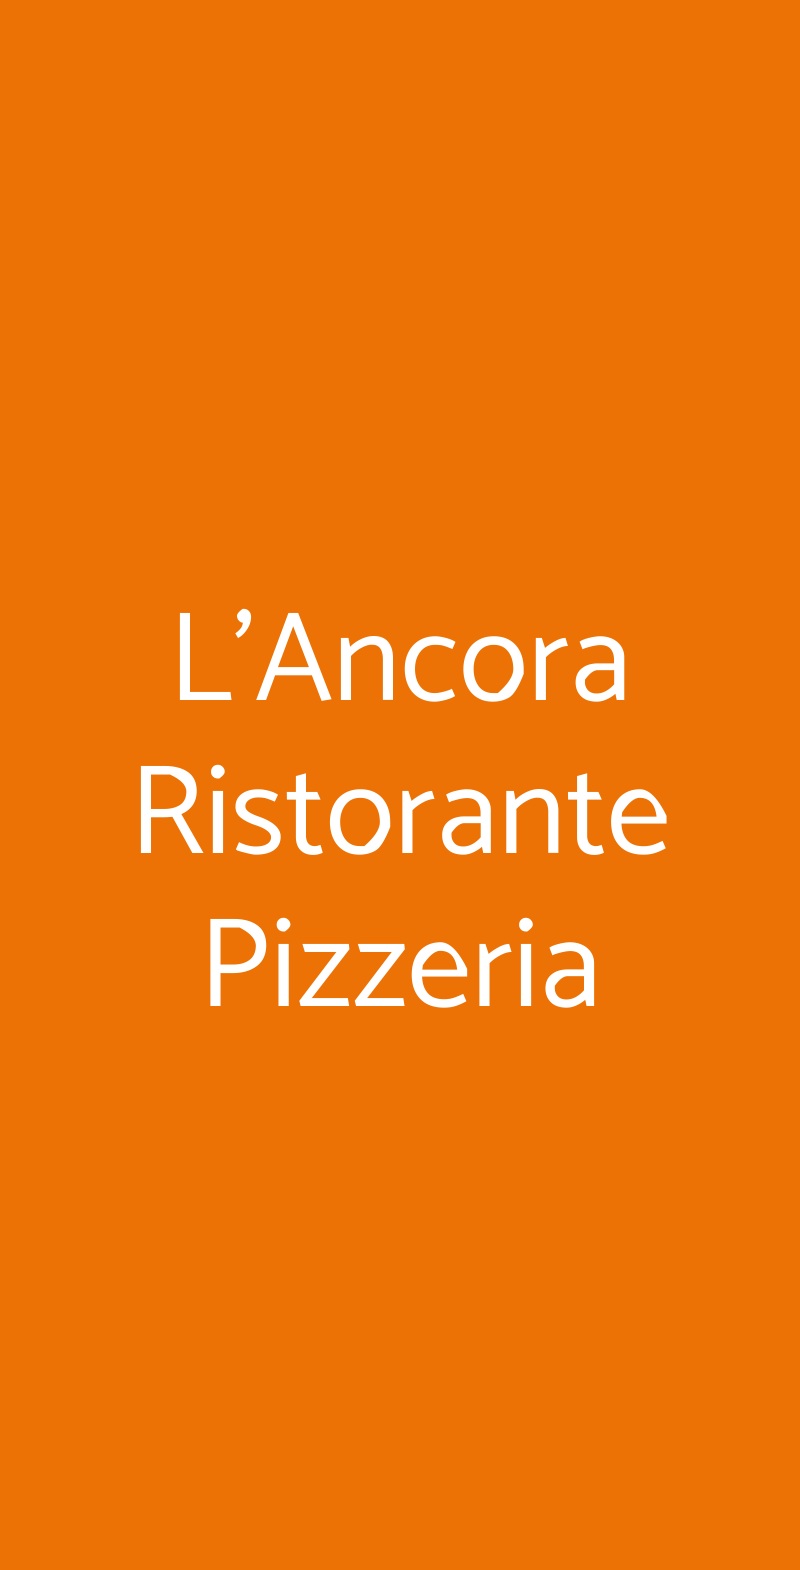 L'Ancora Ristorante Pizzeria Milano menù 1 pagina